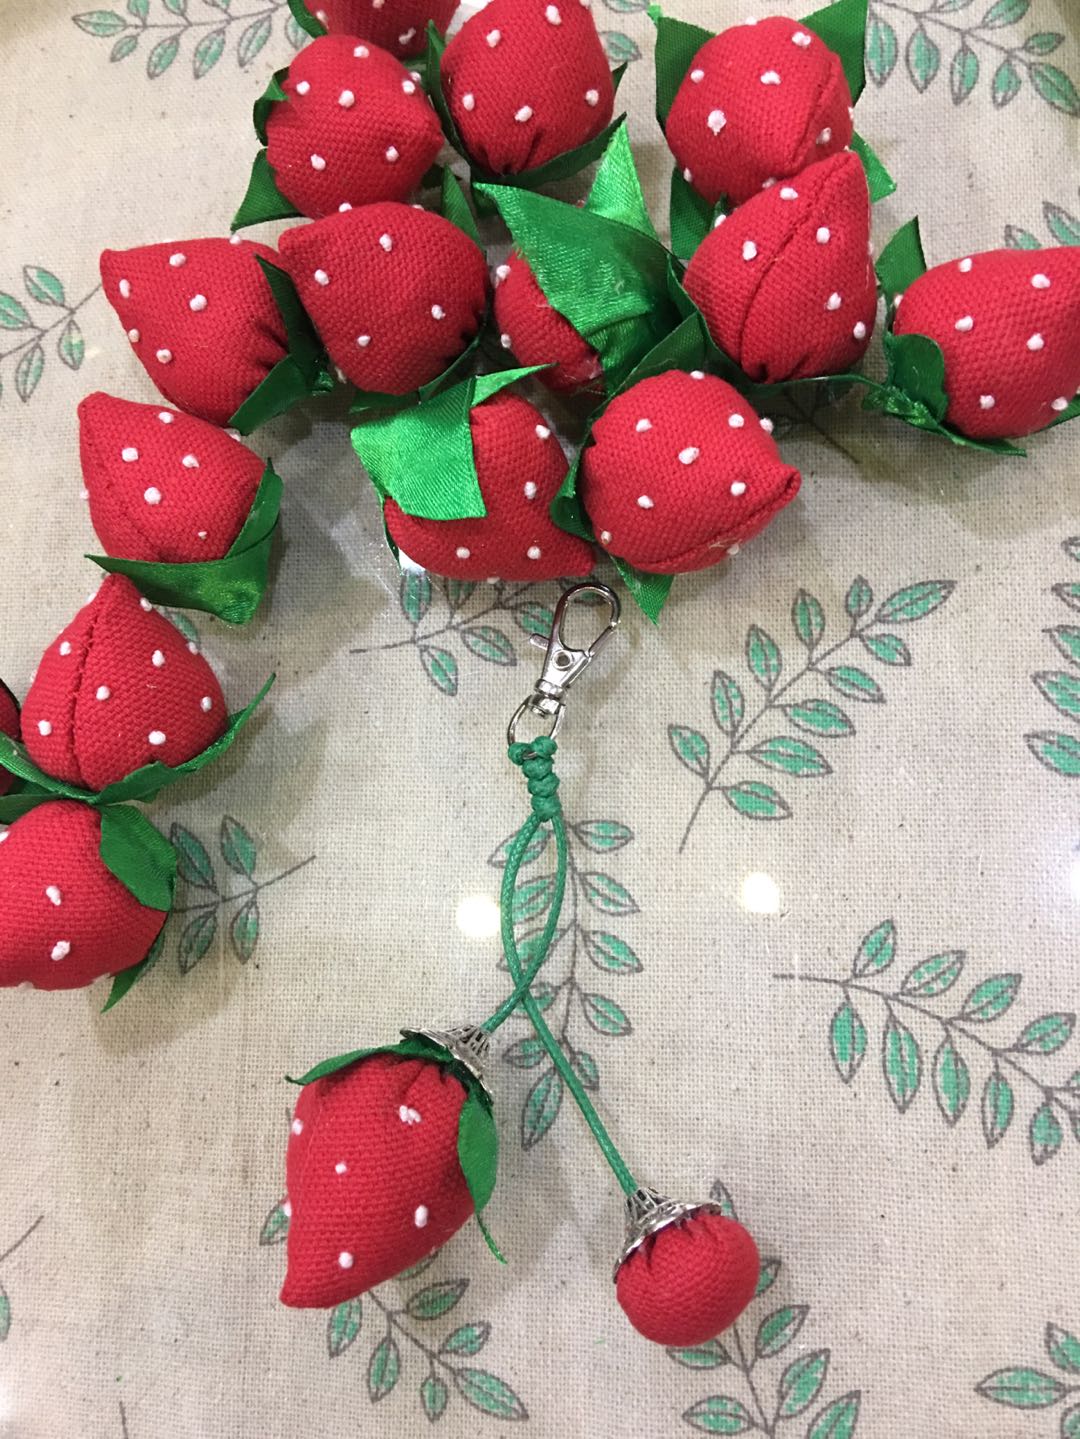 阳春三月，正是百花绽放的好时节，喜欢吃草莓，这个时候的草莓🍓最是漂亮好吃的了，手工就做一篮草莓，做些有关于草莓的一些饰品吧😋